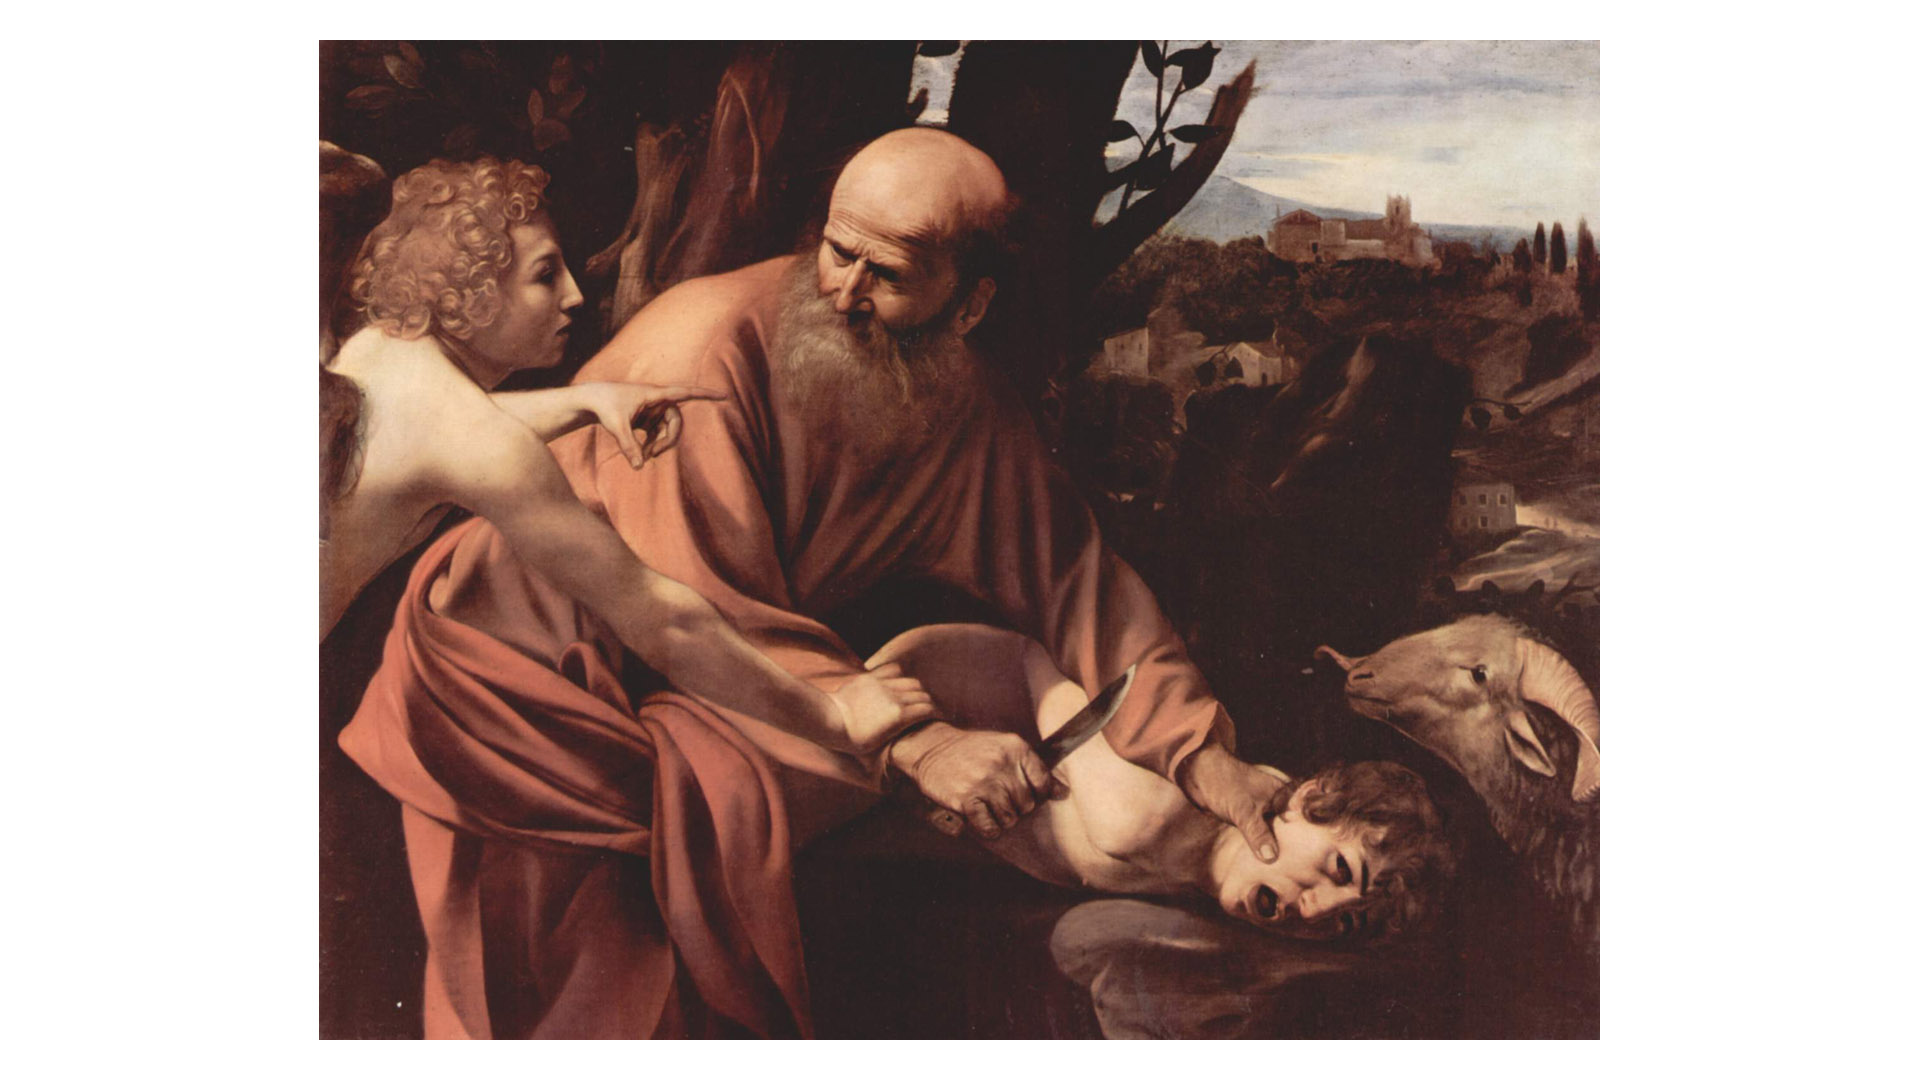 Abraham ist bereit, seinen Sohn zu opfern, doch ein Engel hält ihn davon ab: Das biblische Motiv, hier in einer Zeichnung von Michelangelo Merisi da Caravaggio, findet sich auch im Koran und in der islamischen Kunst.